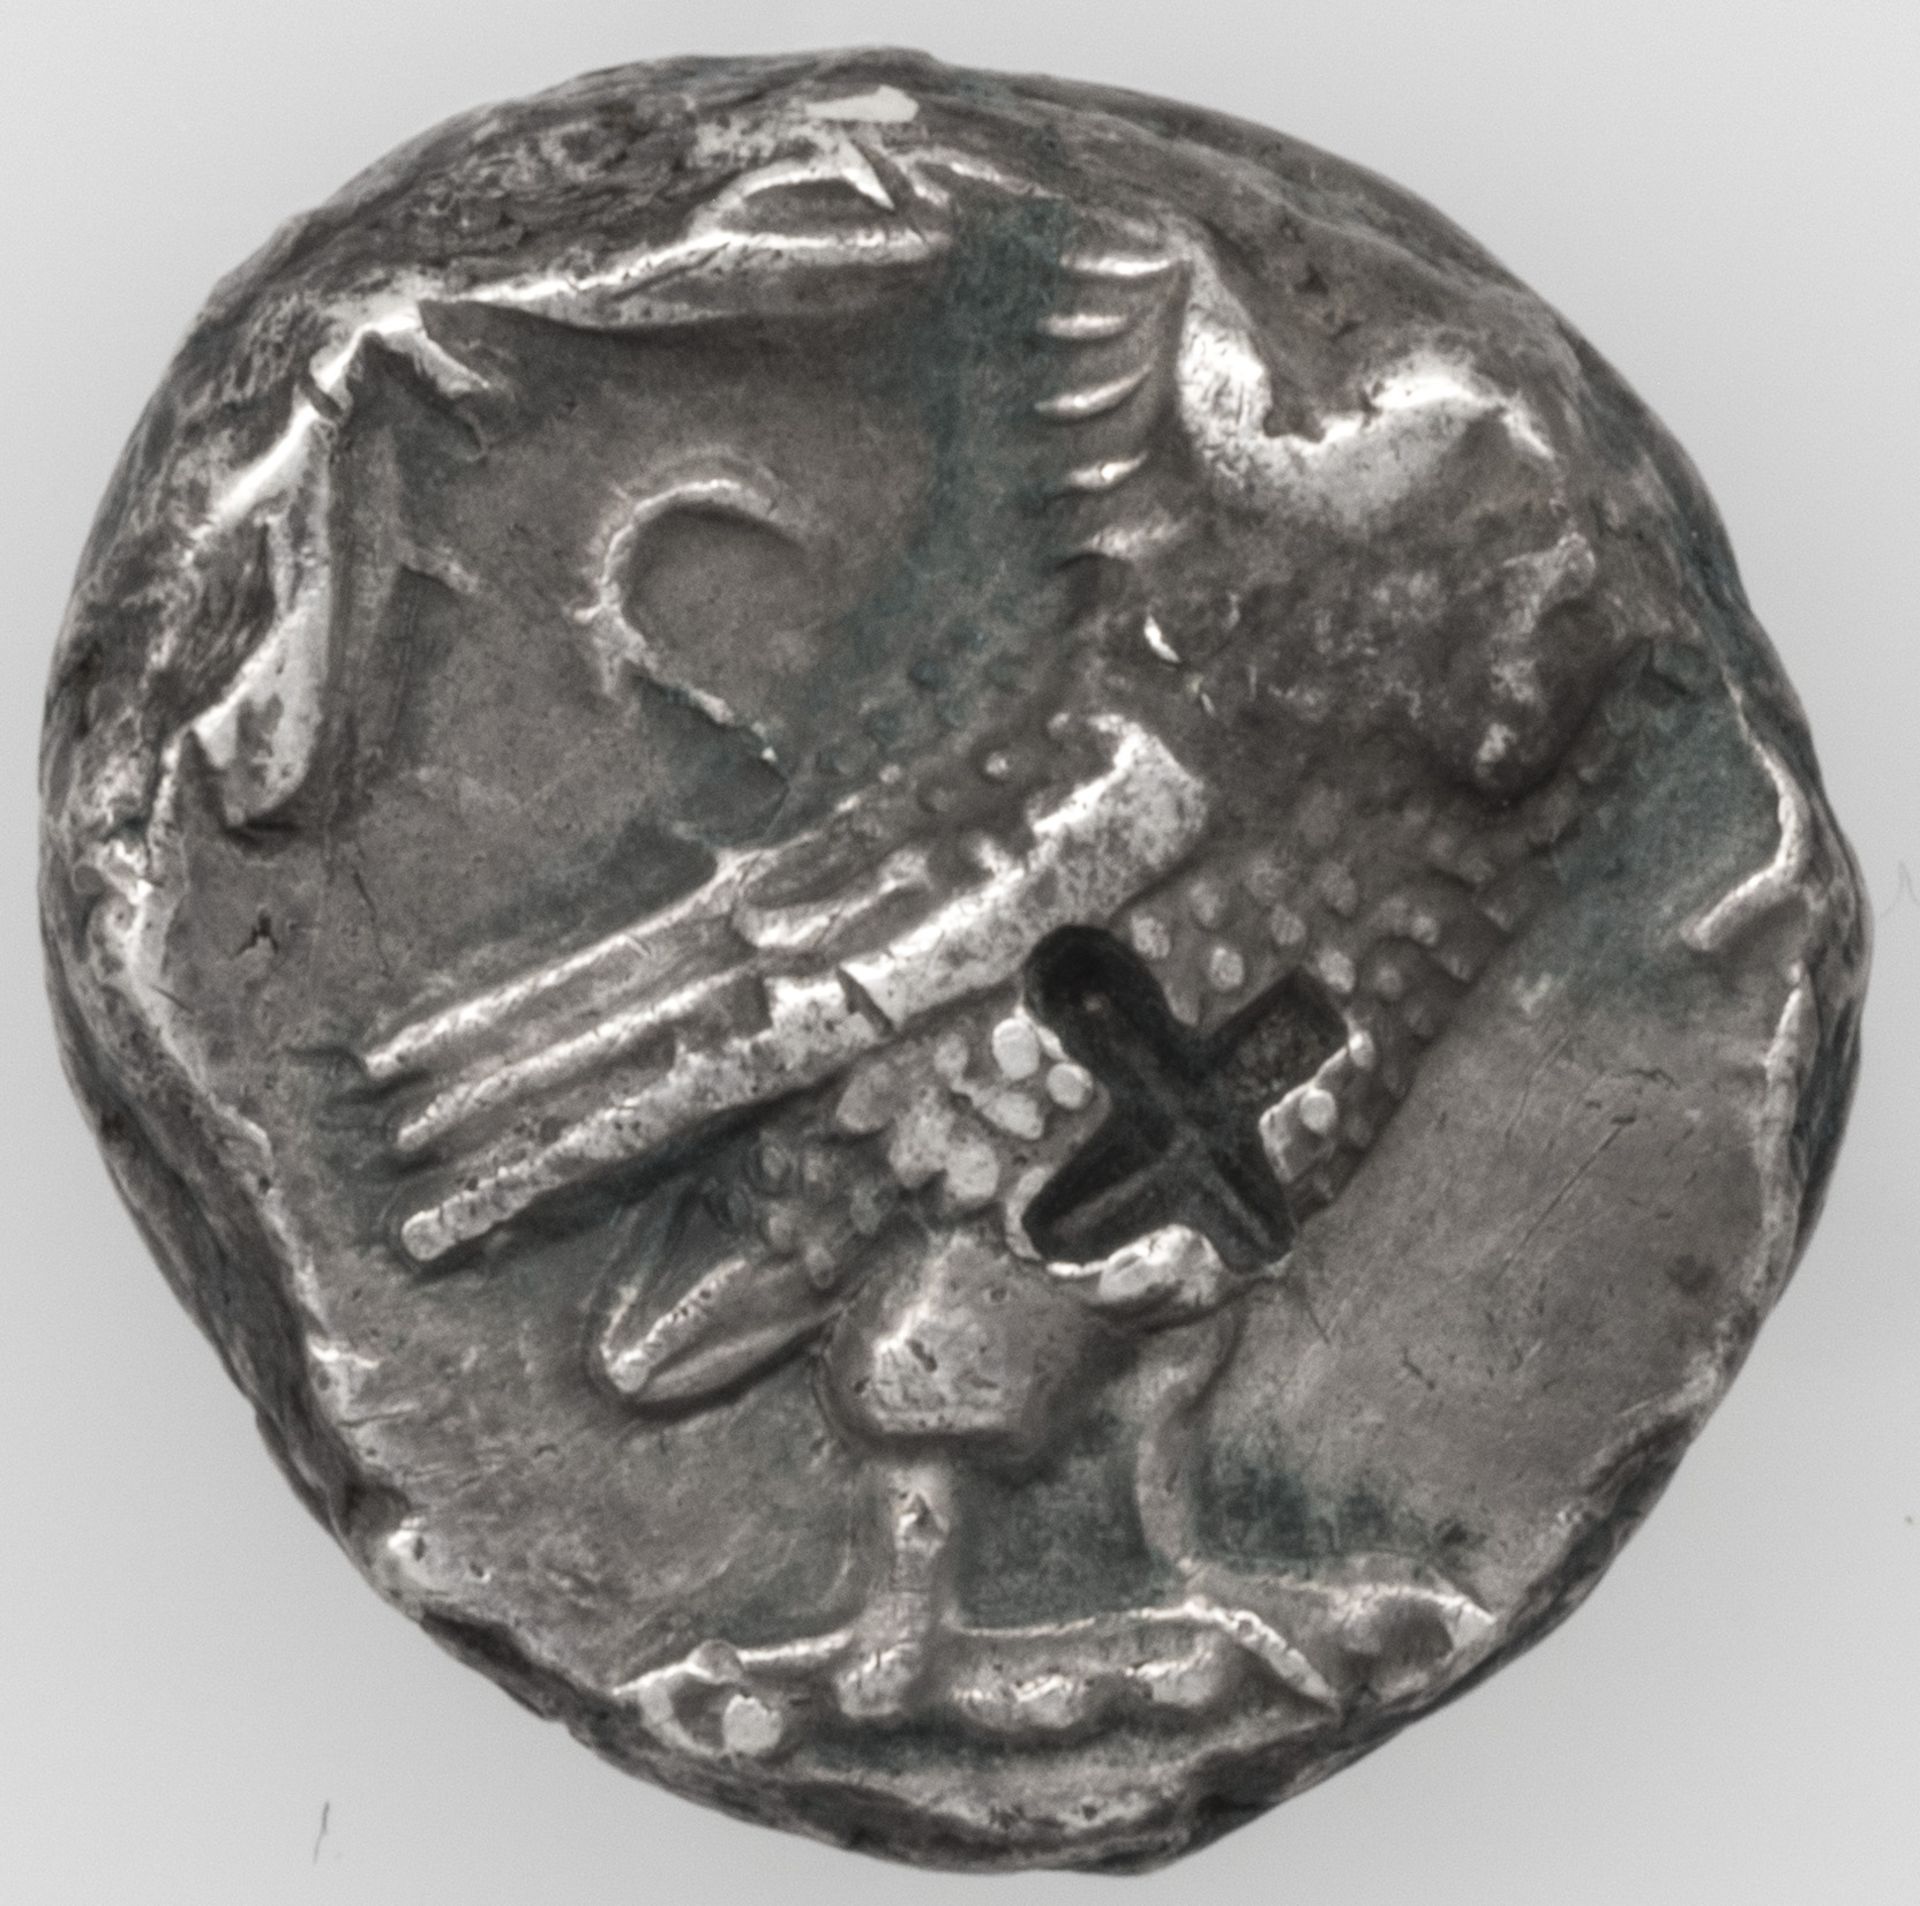 Antike Griechenland - Athen, Tetradrachme, 5. Jhd. v. Chr., Athene nach rechts schauend - Eule unter - Image 2 of 2